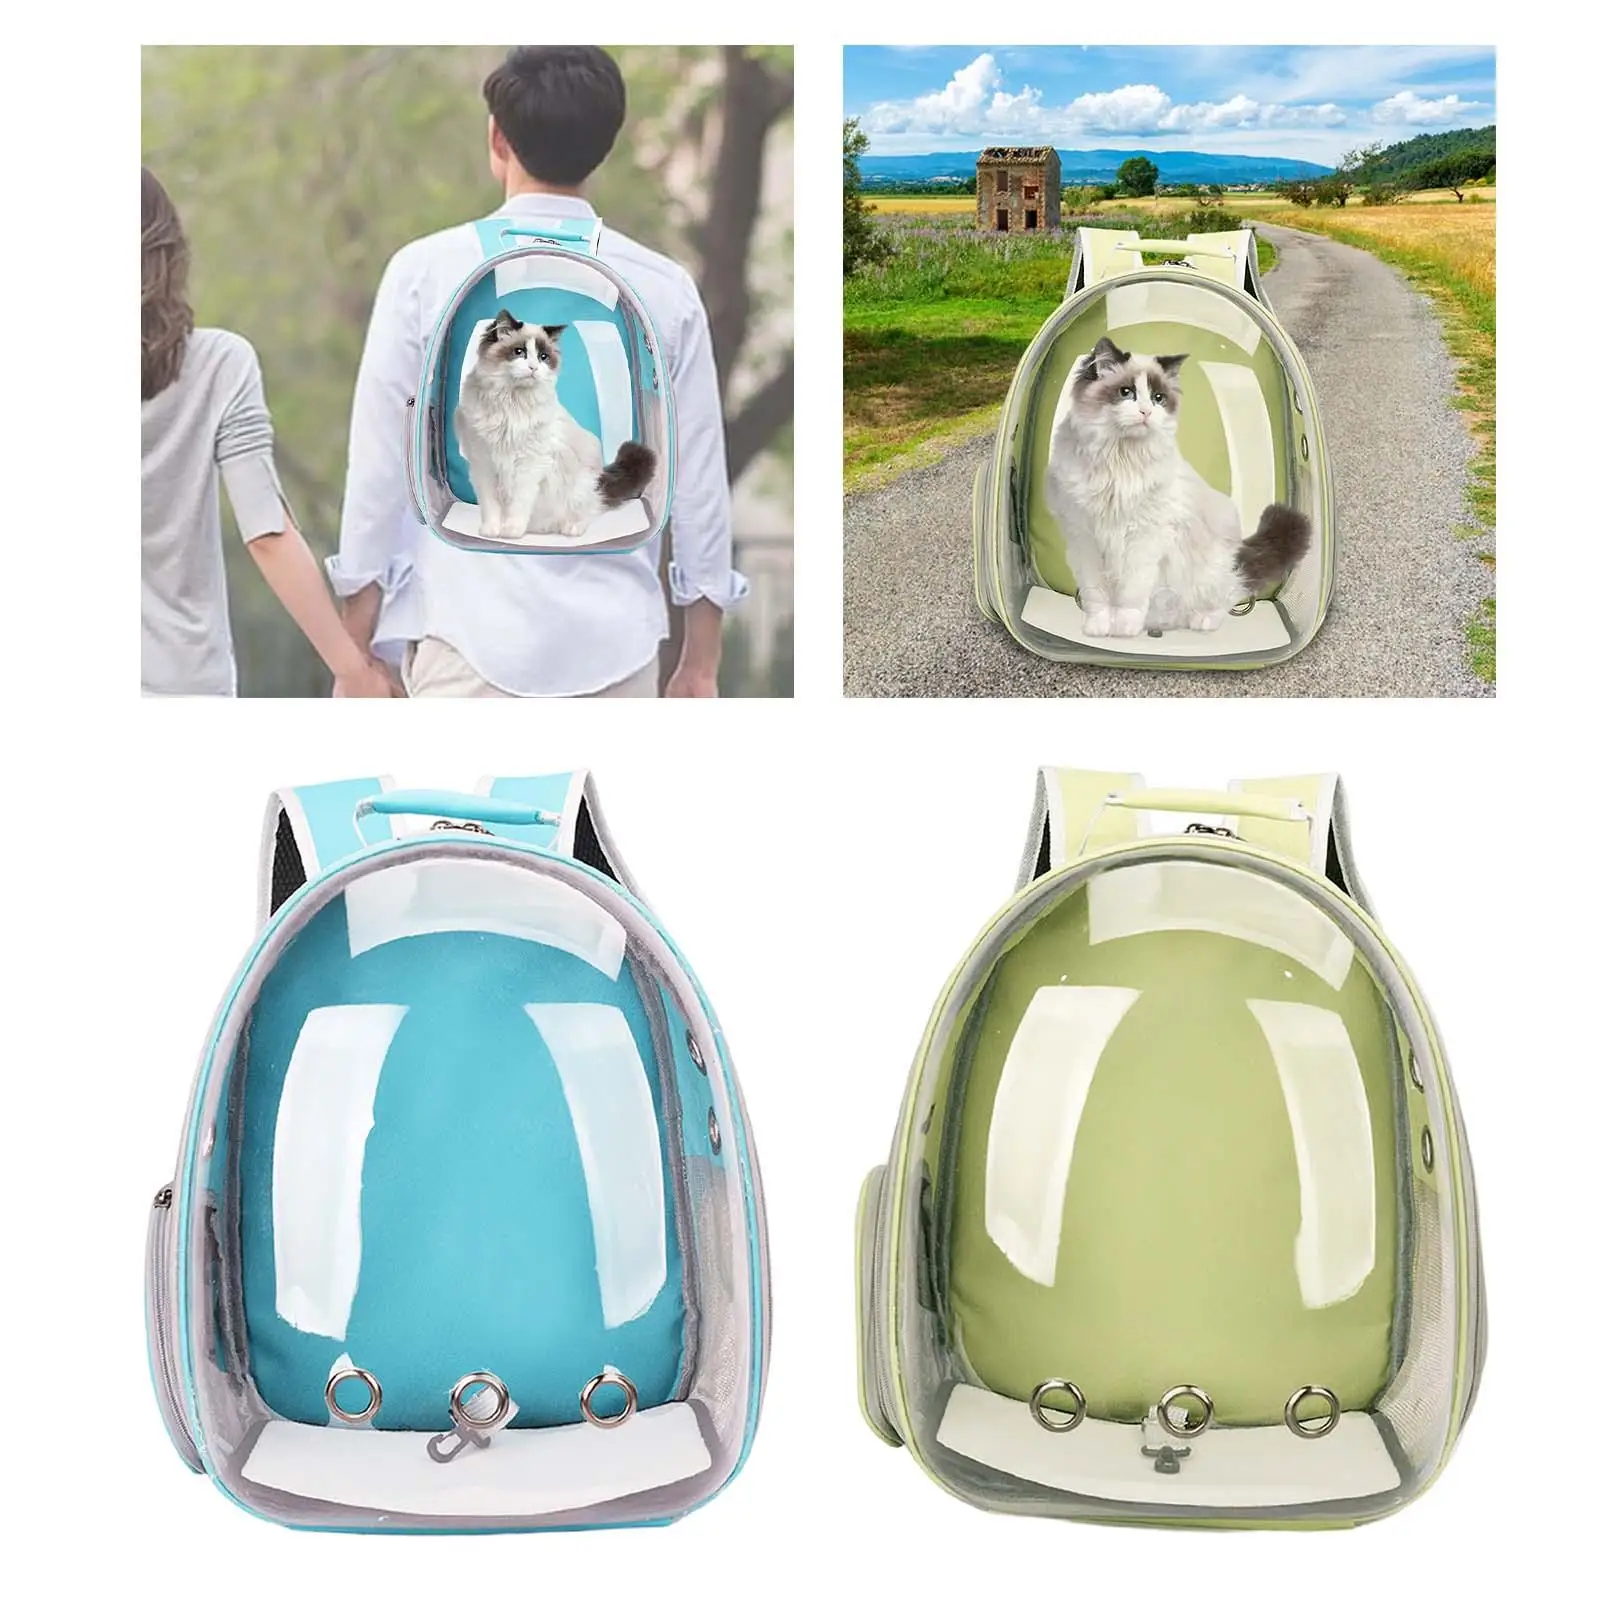 Pet Cat Carrier Backpack Soft Breathable Adjustable Shoulder Strap Tote Pet Travel Bag for Walking Hiking Travel Outdoor Use